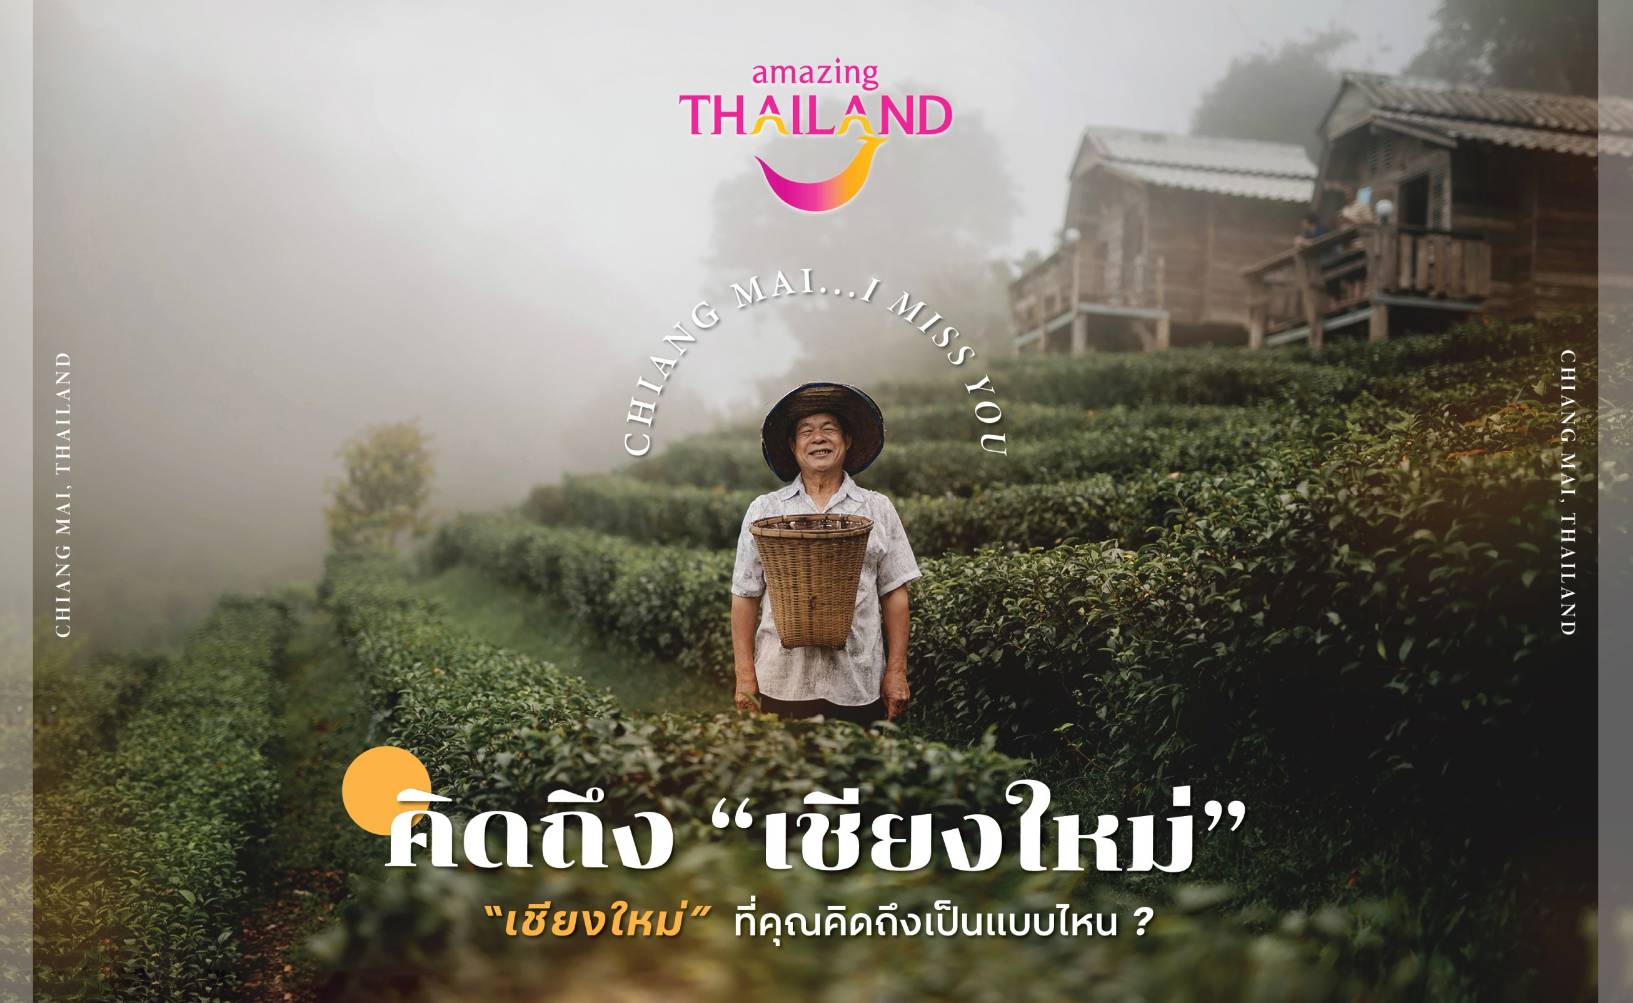 ททท. เชียงใหม่ ชวนส่งรูปเชียงใหม่ให้หายคิดถึง ในกิจกรรม “Chiang Mai I Miss You”